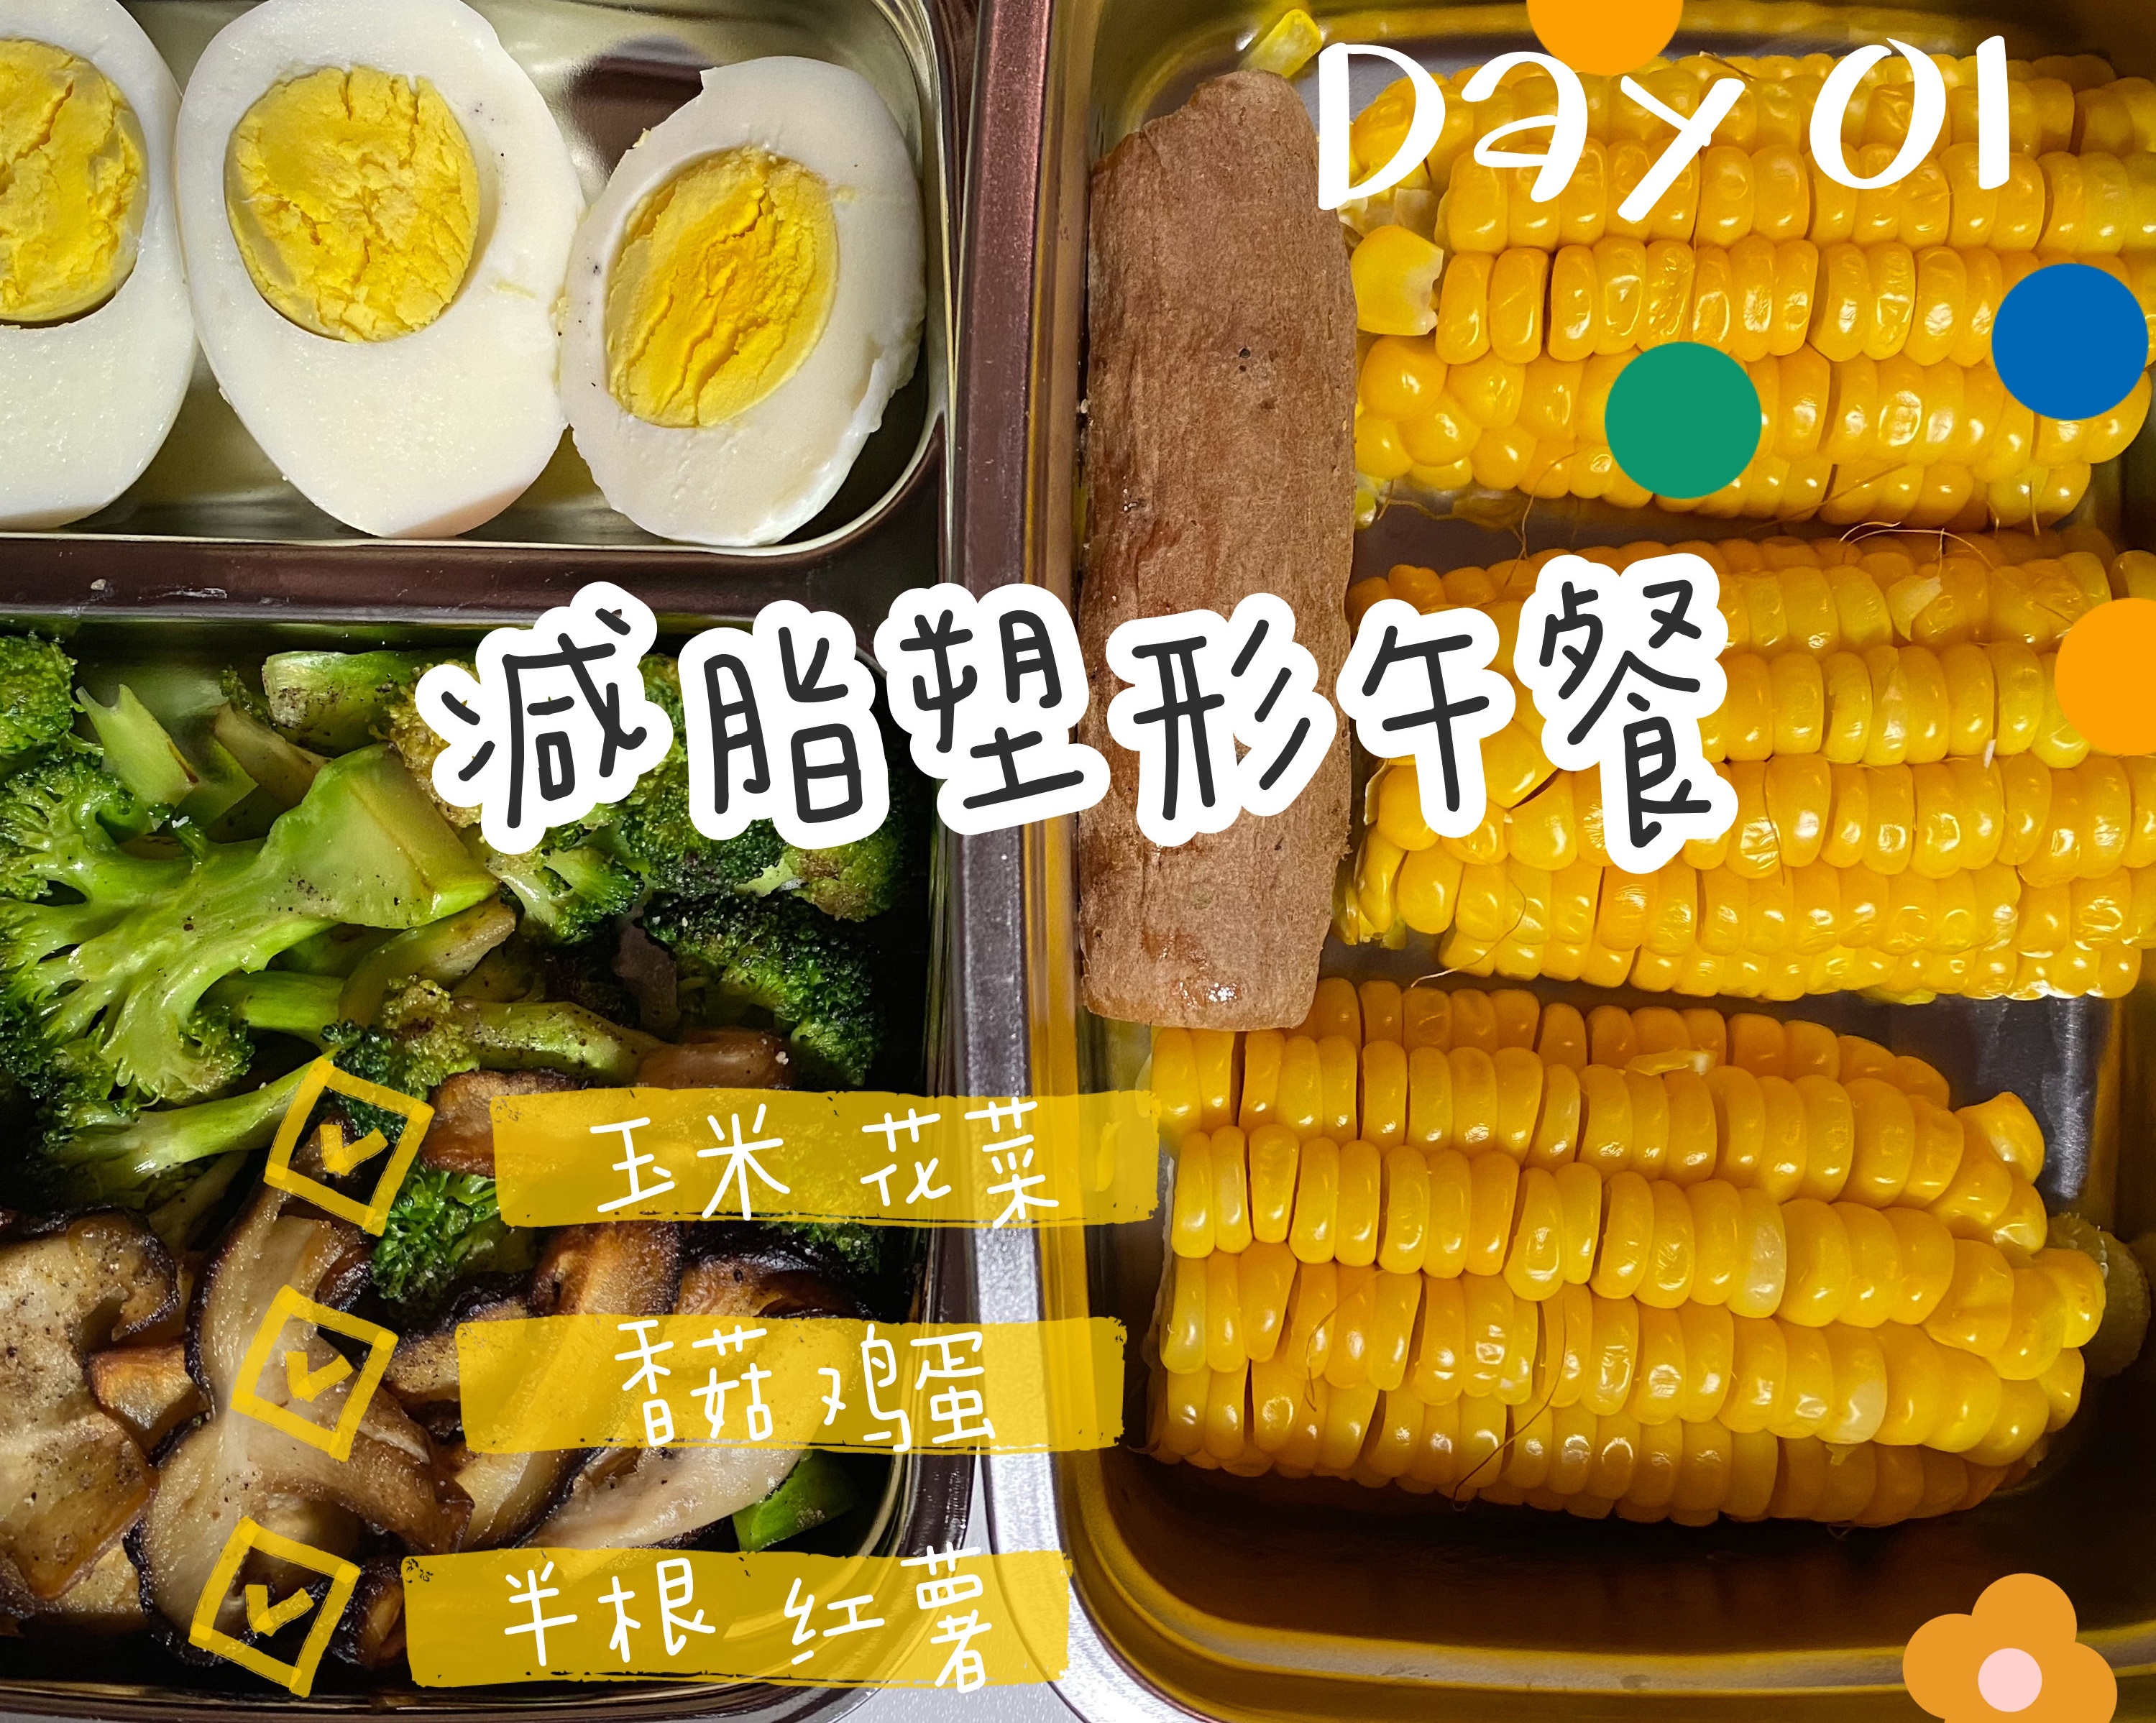 一周不重样 减脂塑形午餐 DAY01开启刷脂模式 花菜玉米的做法